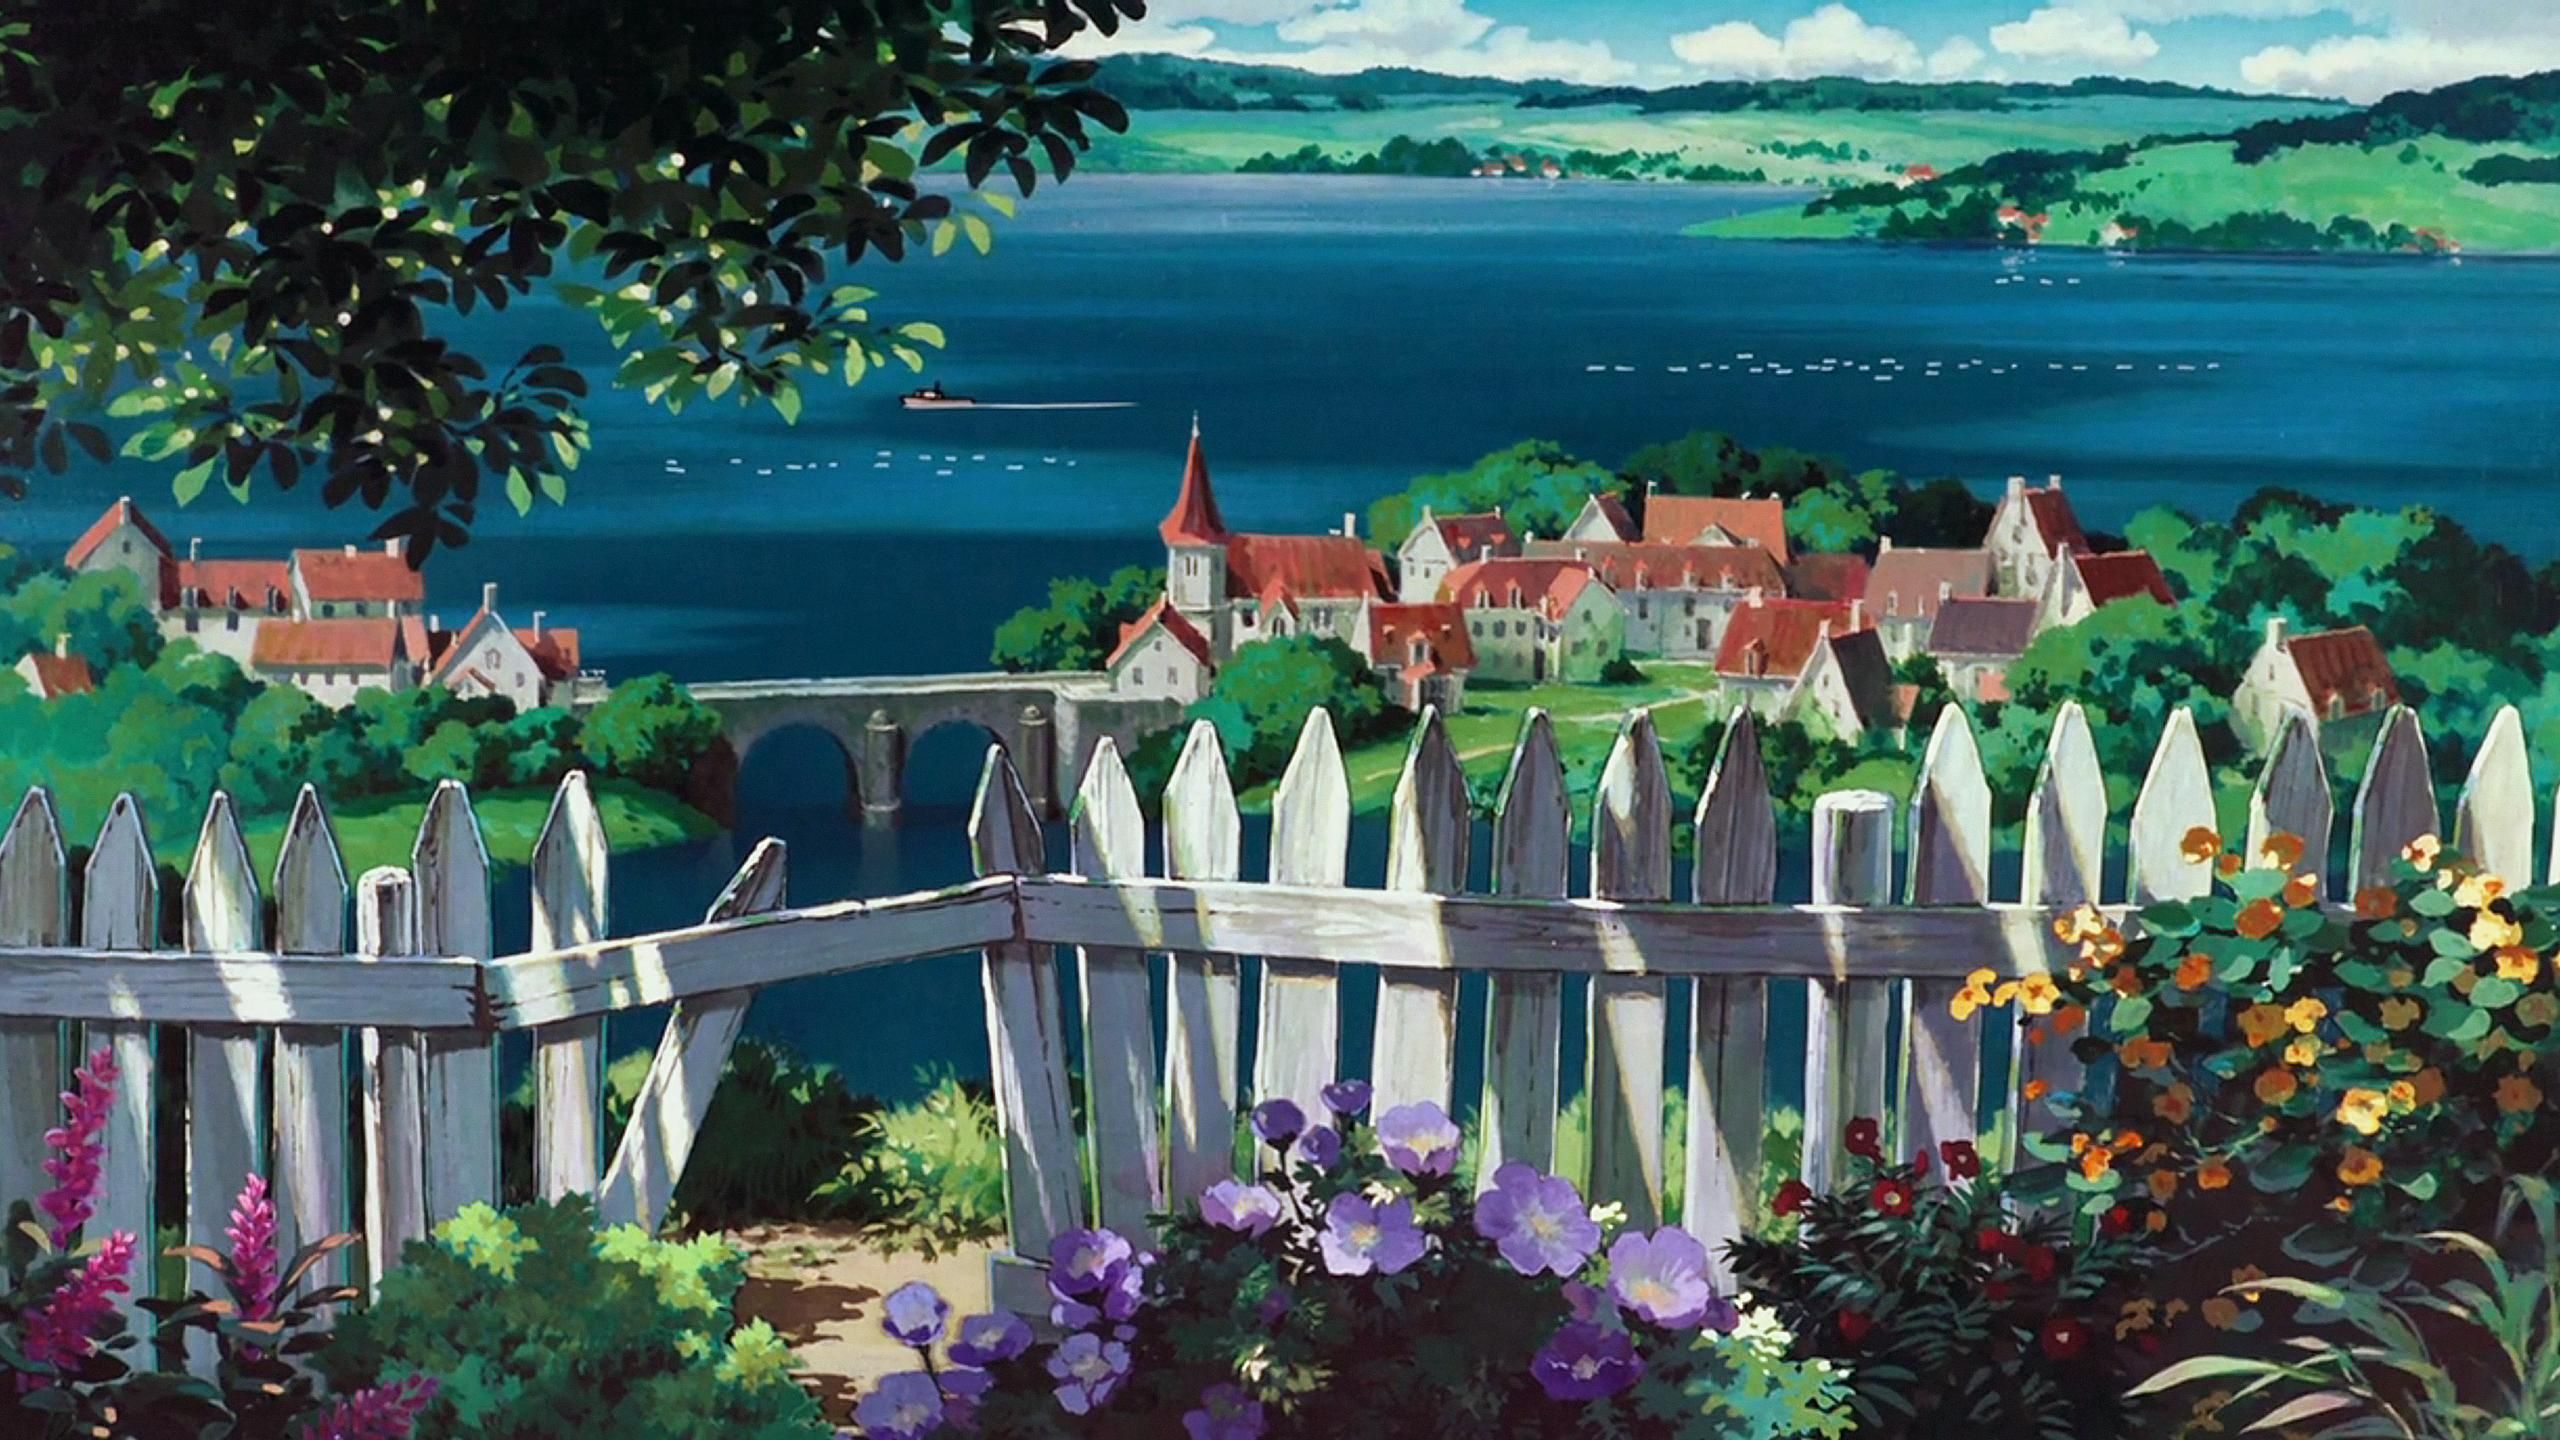 Studio Ghibli Aesthetic Desktop Wallpaper Free Studio Ghibli Aesthetic Desktop Background